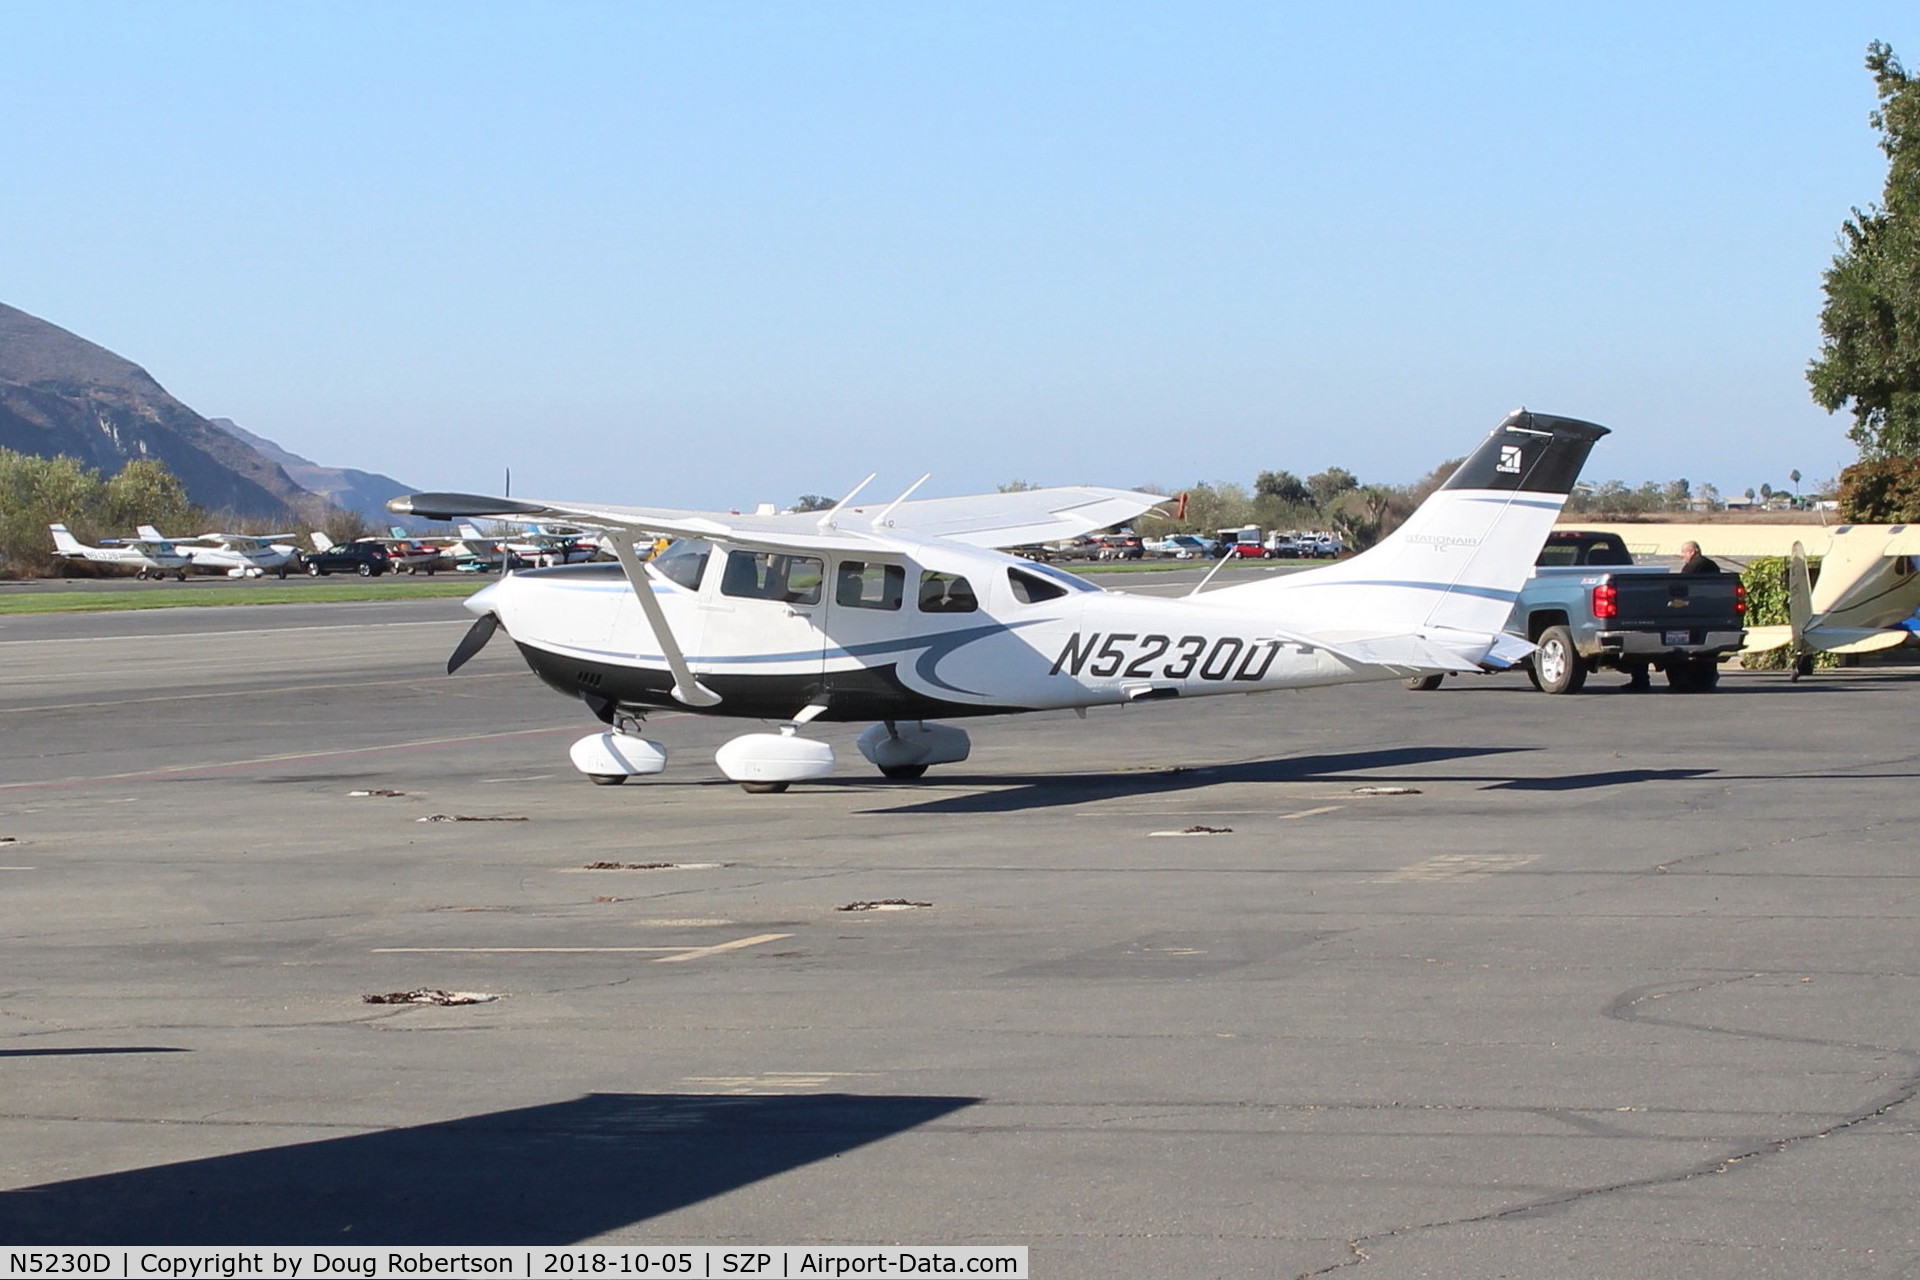 N5230D, 1979 Cessna 172N C/N 17272460, Cessna T206H TURBO STATIONAIR 6, Continental TSIO-520-R, 310 Hp